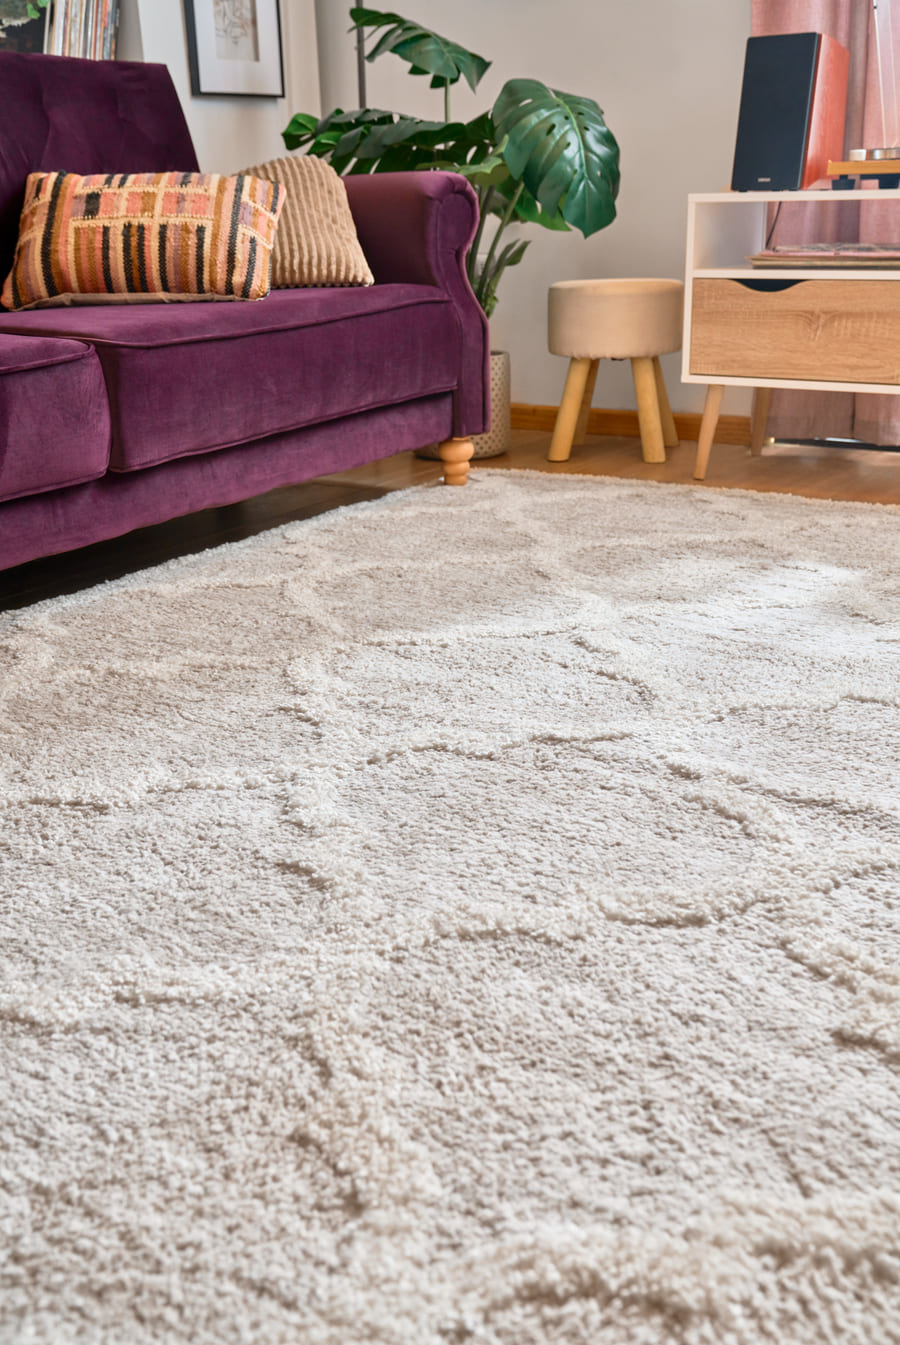 Living pequeño con medidas de alfombras ideales. El sofá velvet color morado tiene solo las patas delanteras sobre la alfombra shaggy gris.